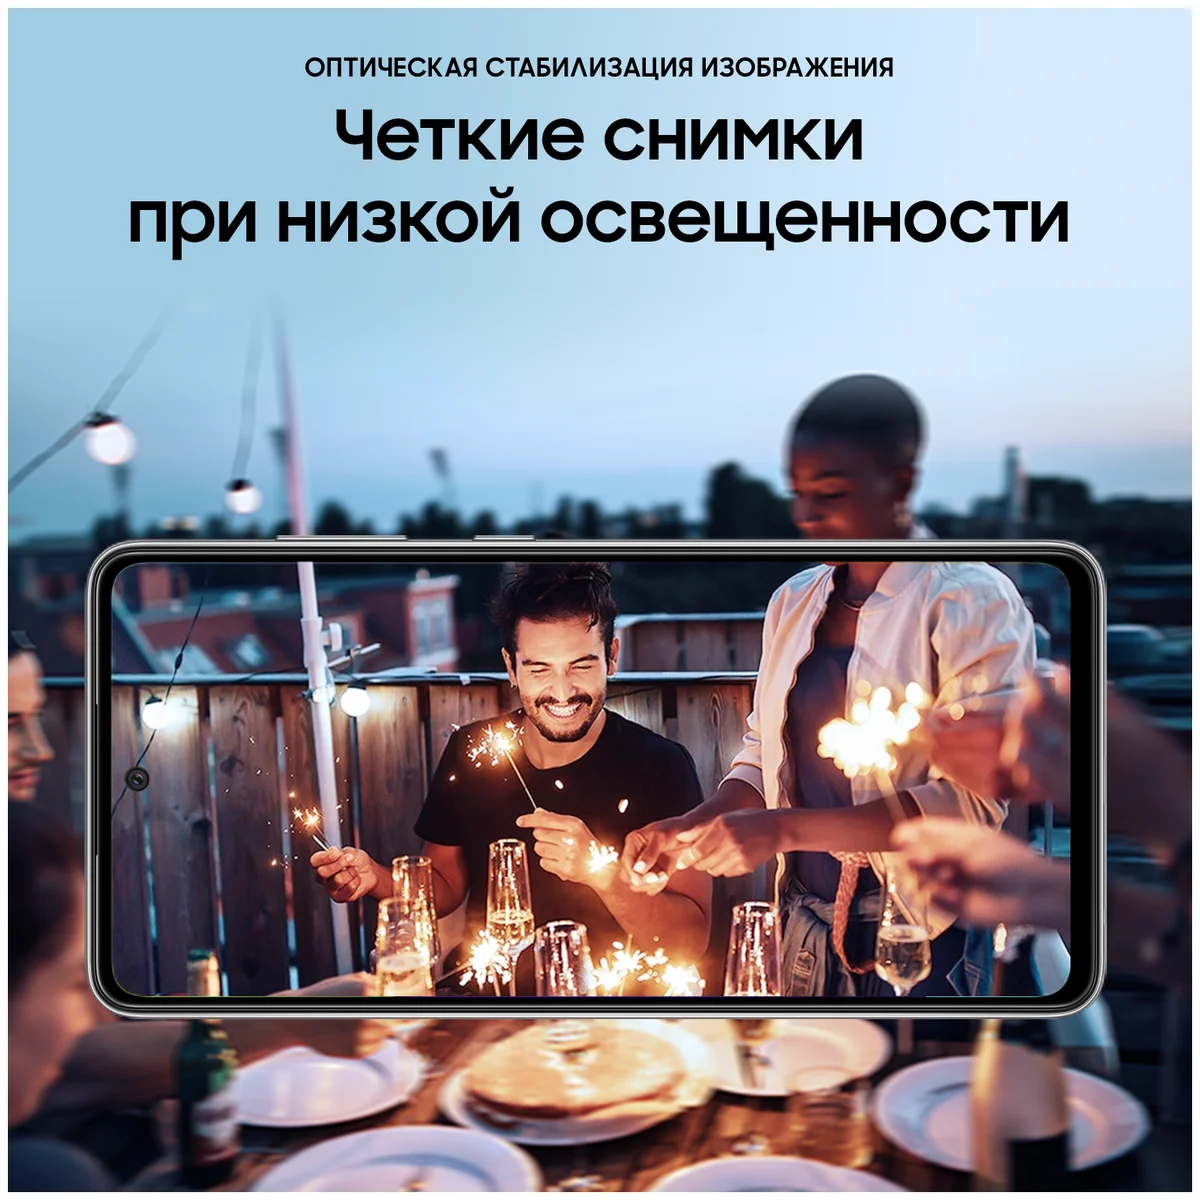 Смартфон SAMSUNG Galaxy A52 256Gb Black (SM-A525FZKISKZ) Казахстан